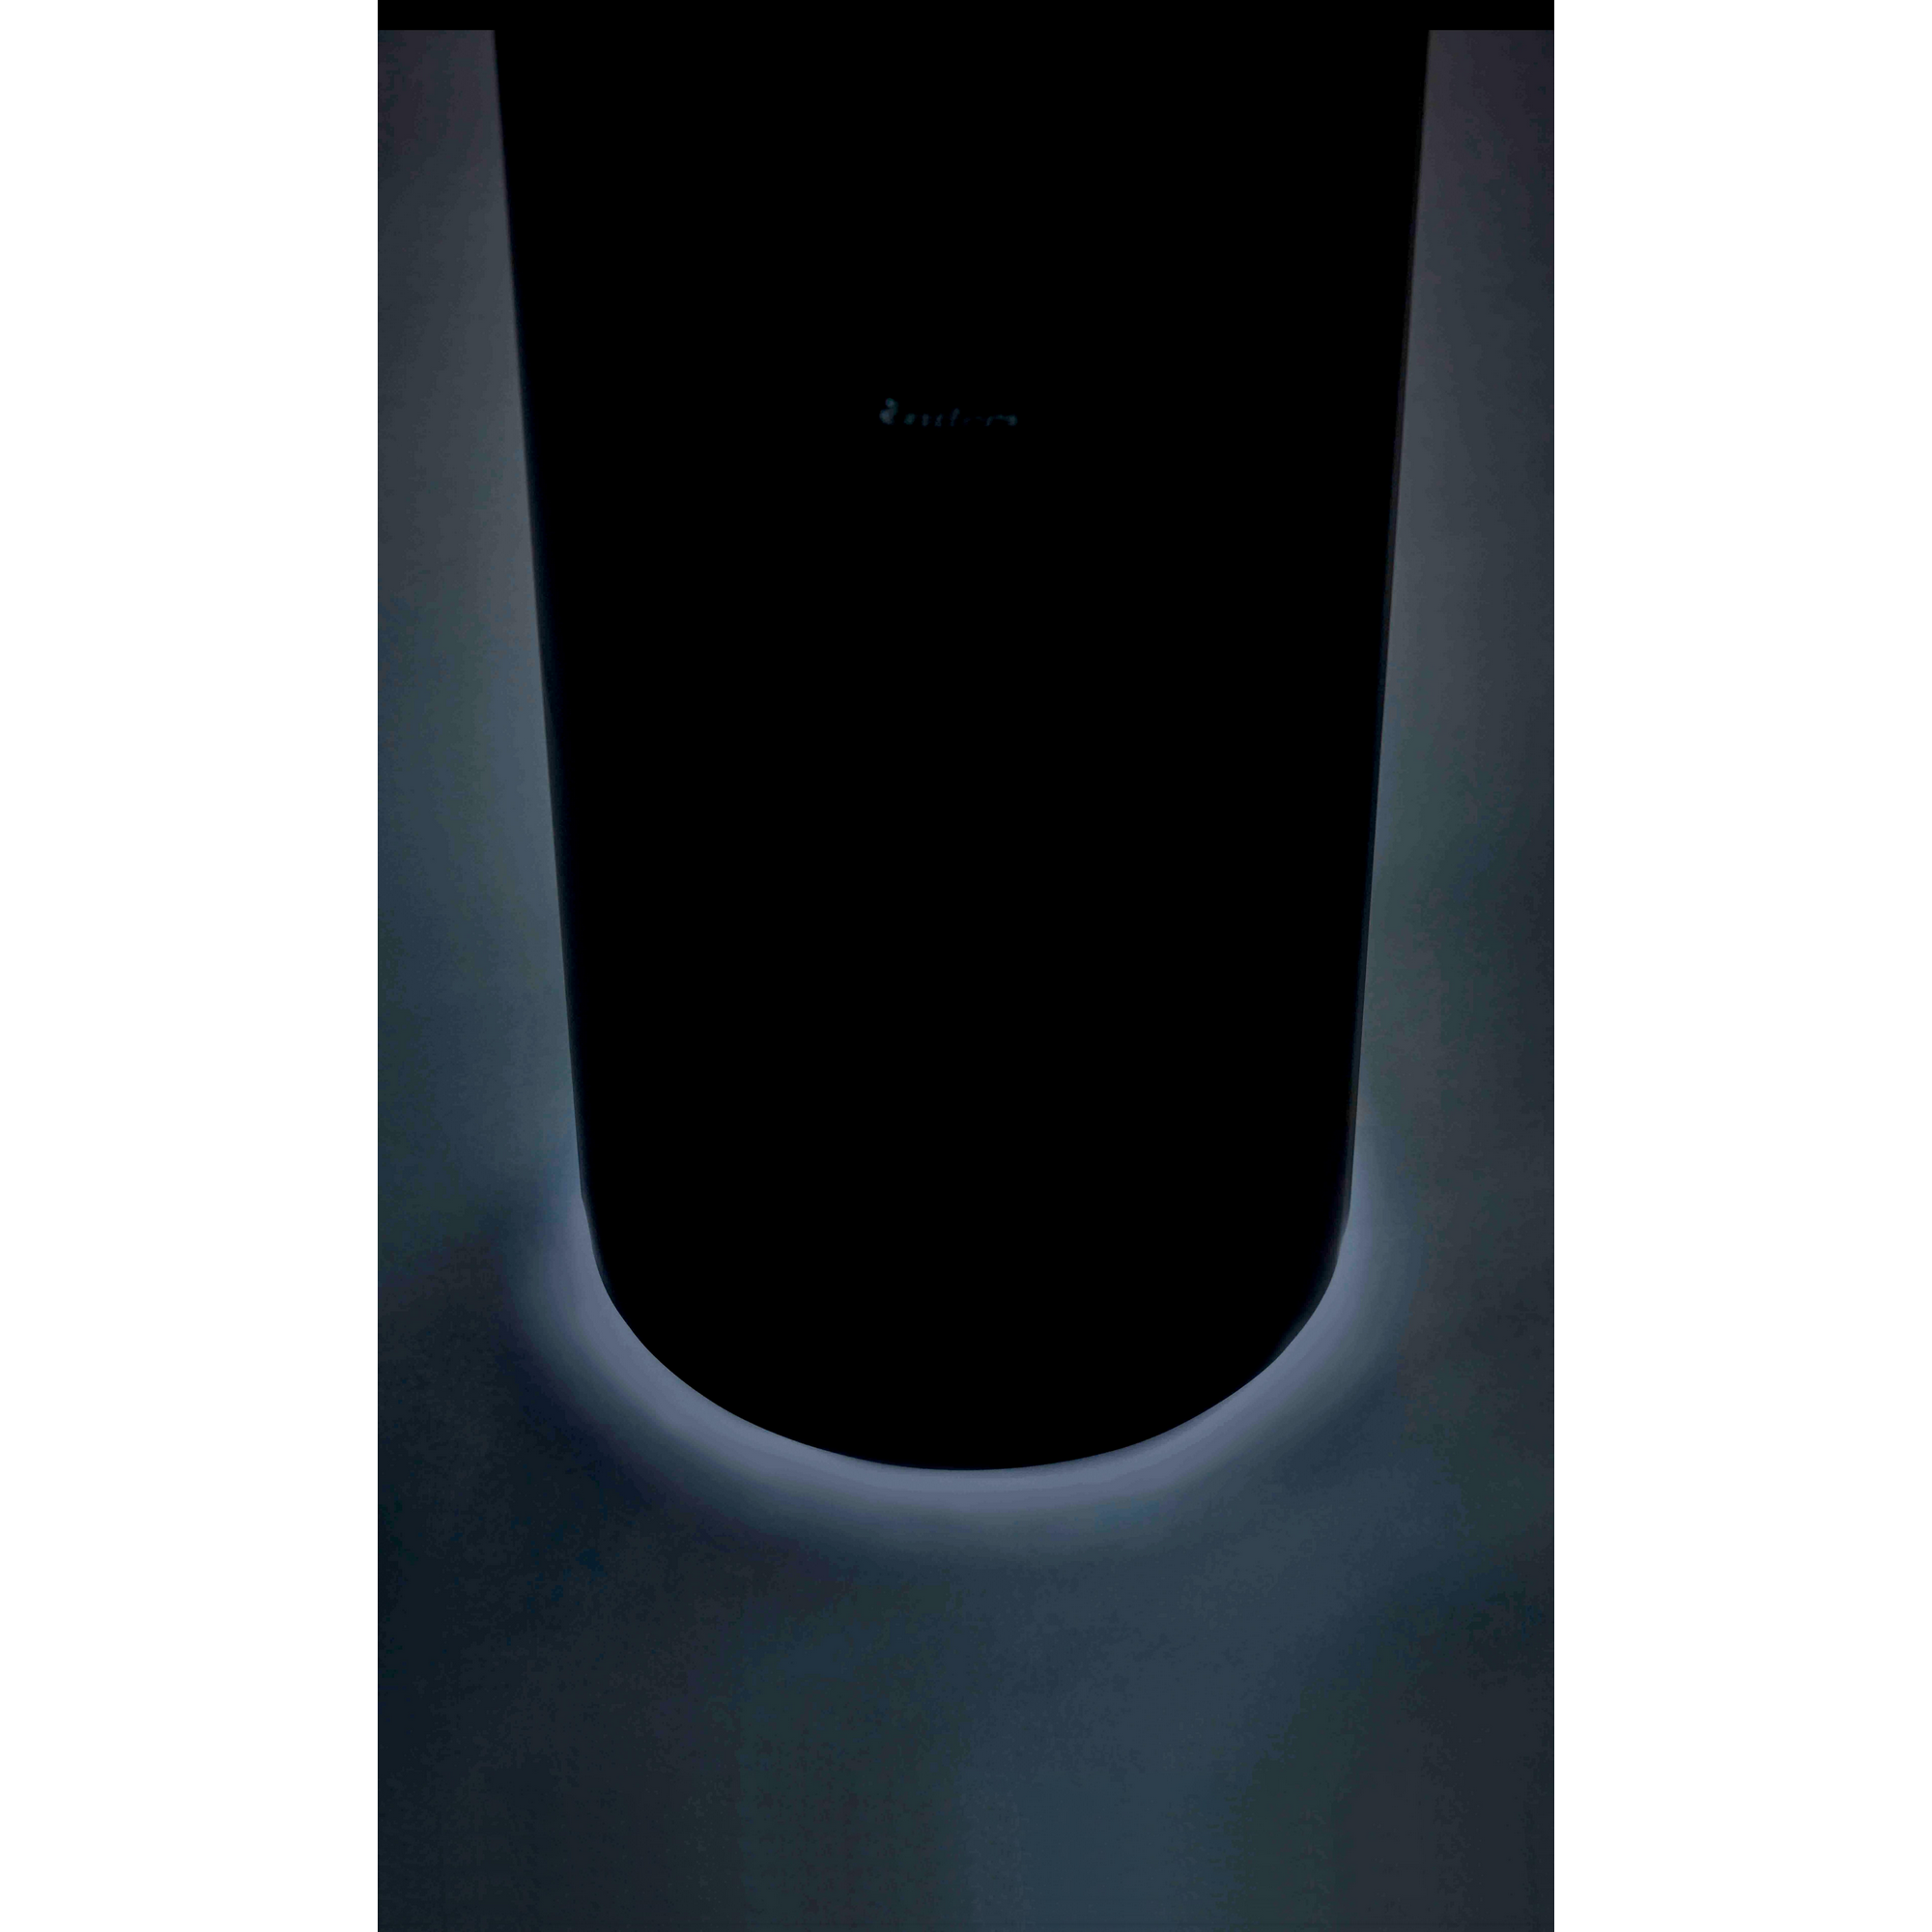 Gas-Feuerstelle 'Nova LED L' mit Schutzhülle, schwarz, Ø 36 x 102 cm + product picture